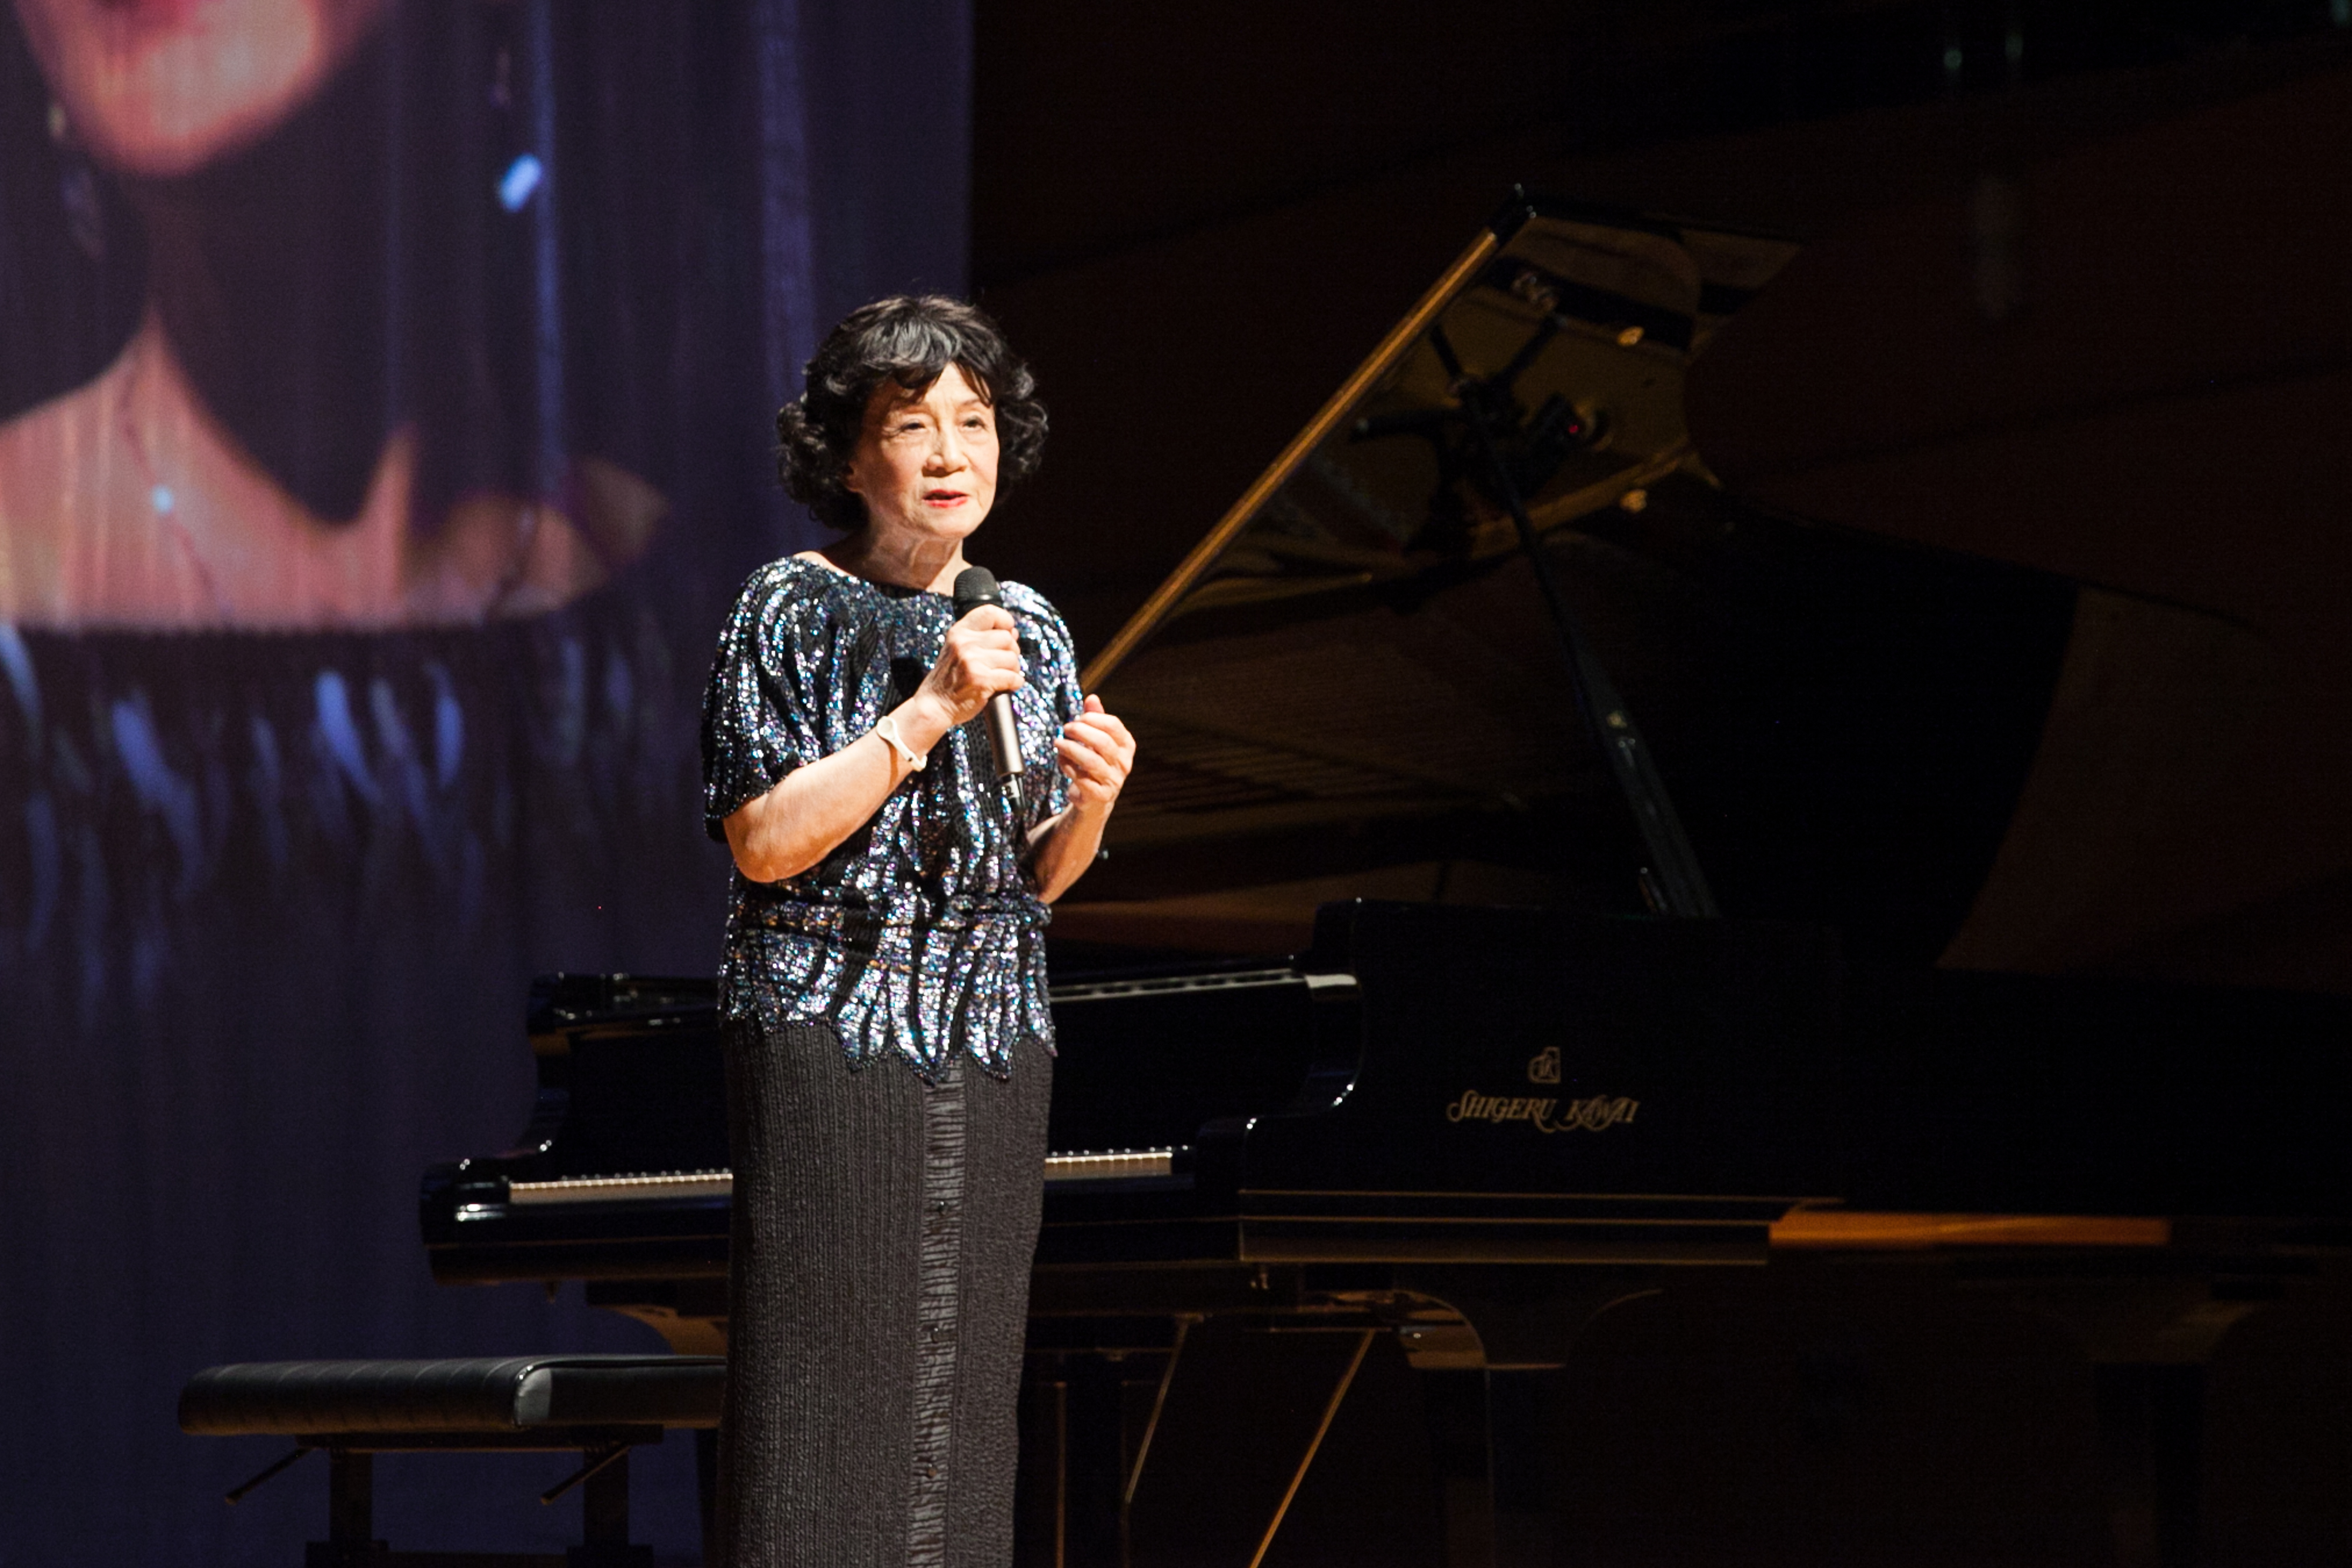 音乐会上,鲍蕙荞教授带来了多首中国风味的钢琴曲目,跨越时间和地域的